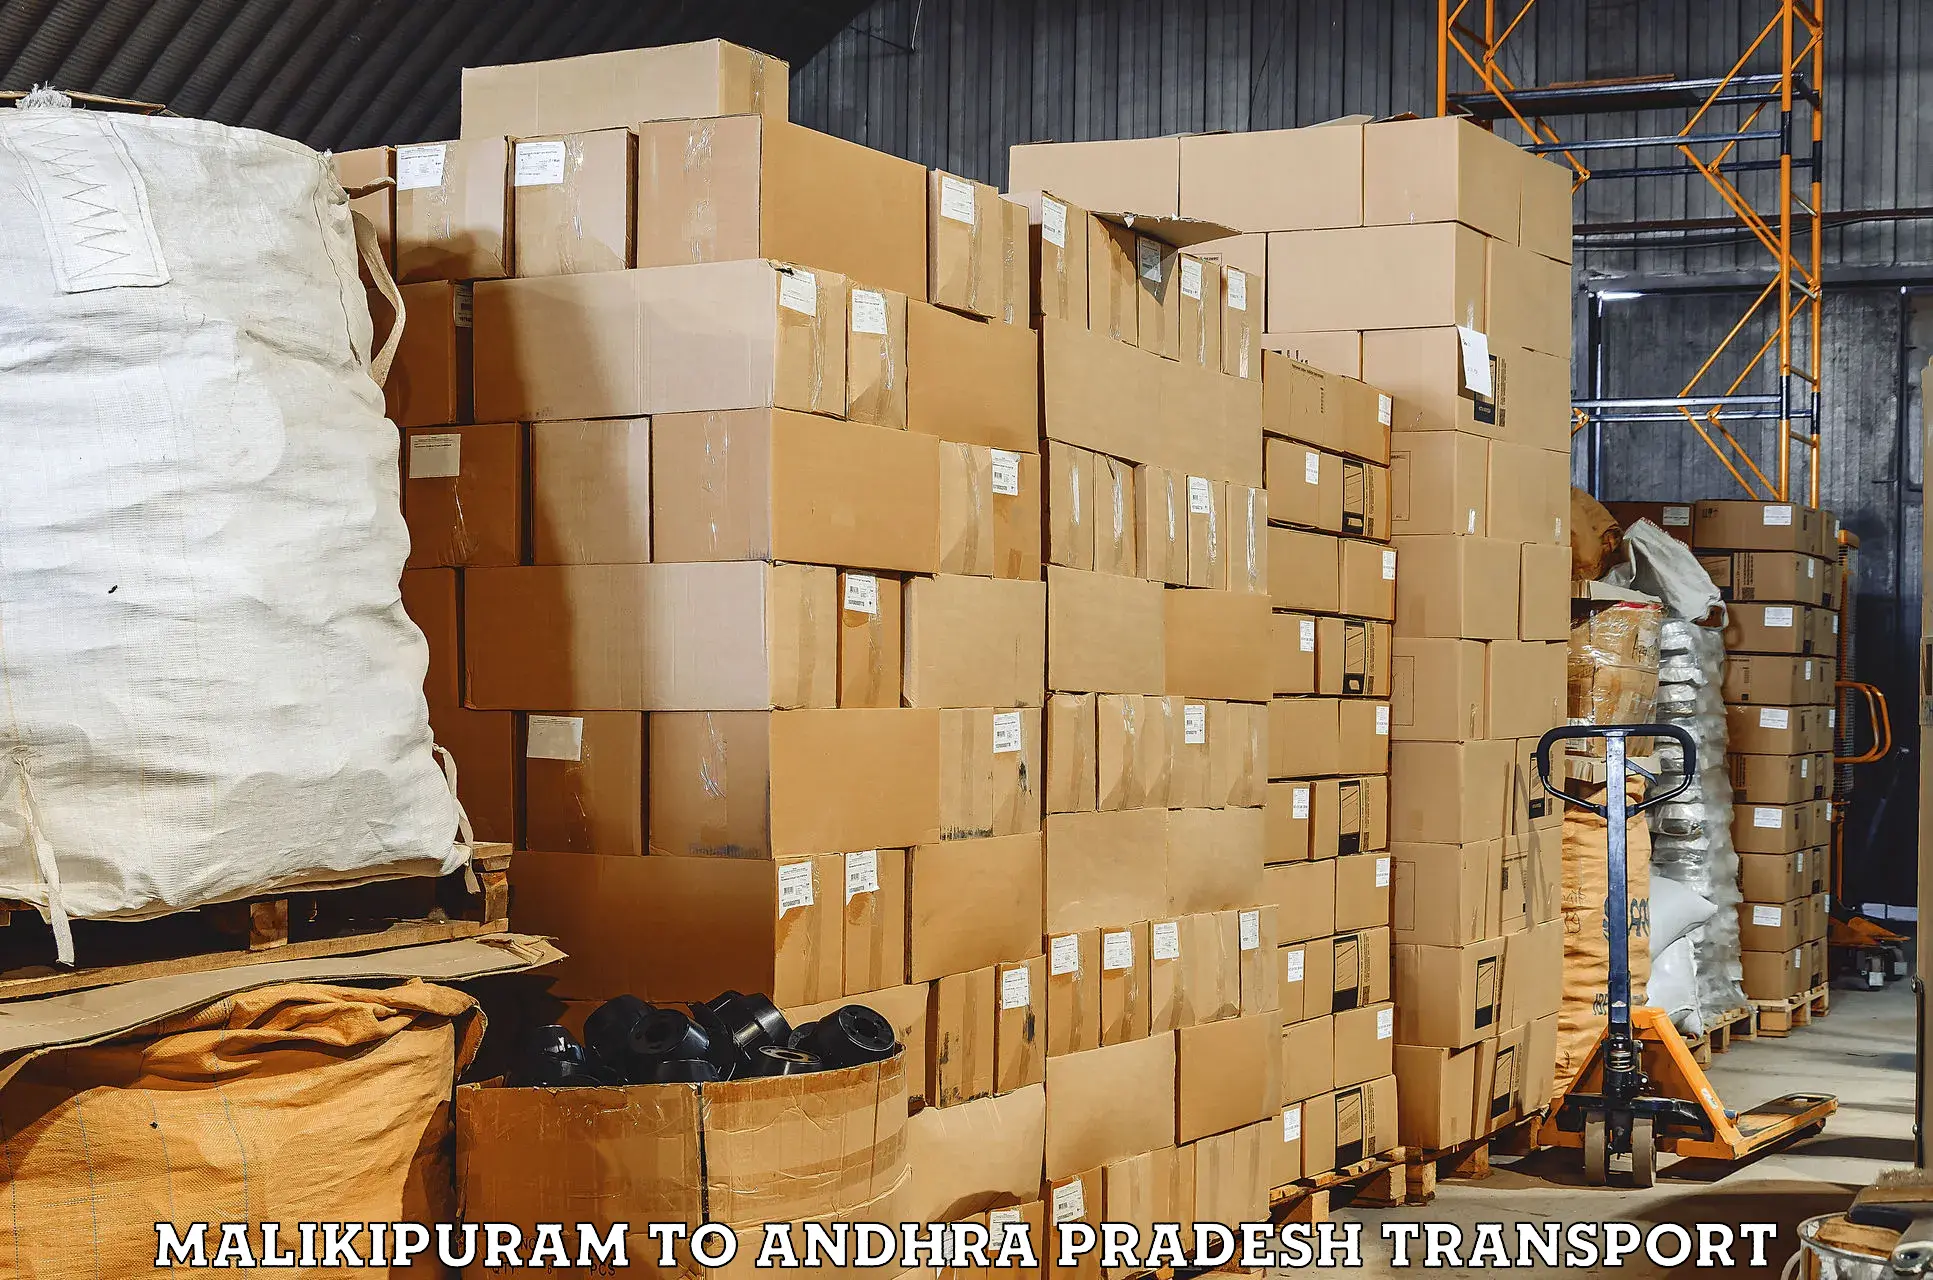 Furniture transport service Malikipuram to Paderu